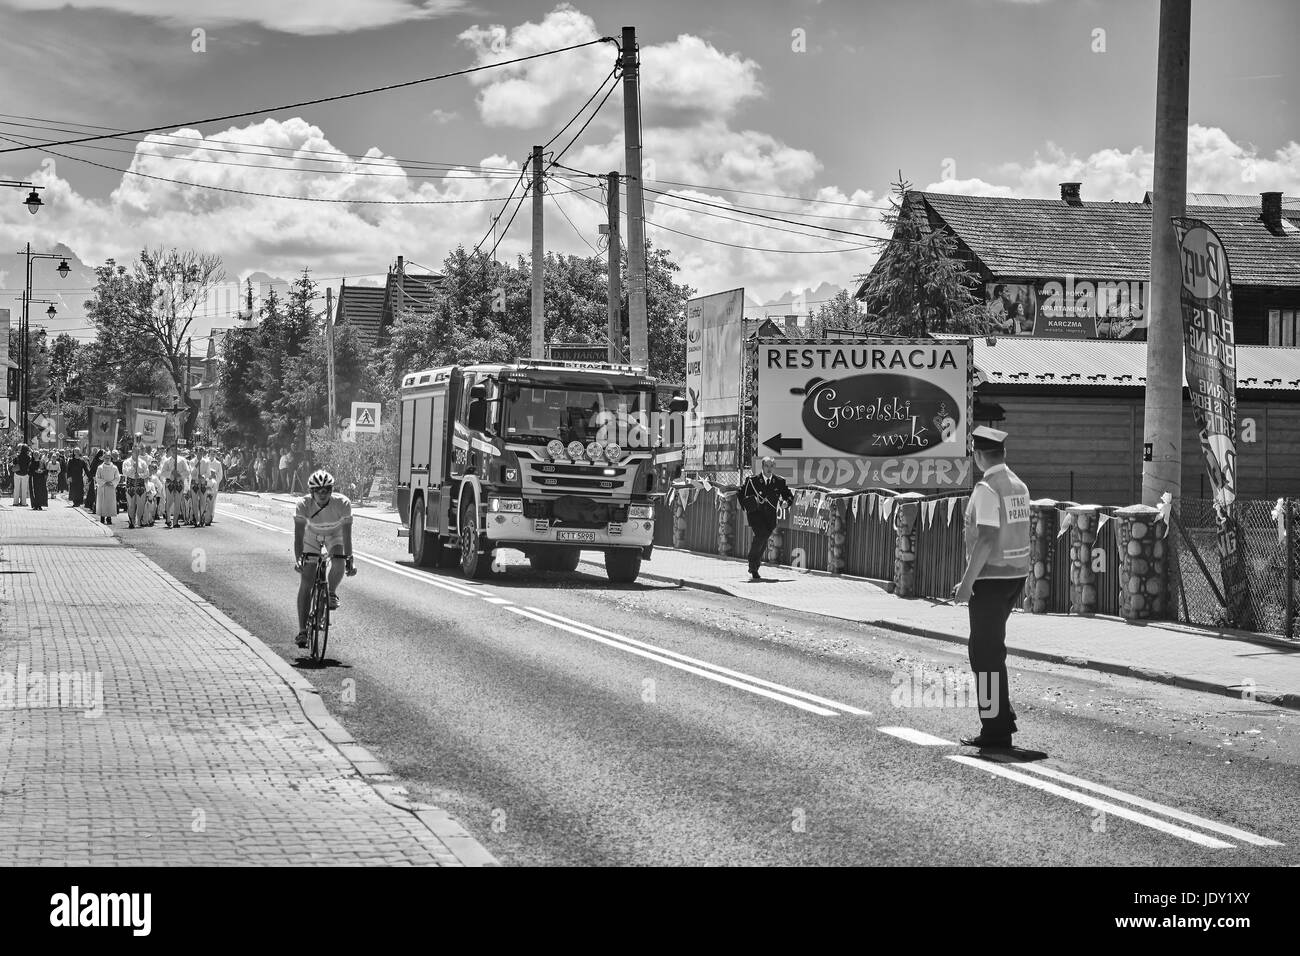 Bialka Tatrzanska, Polonia - 15 Giugno 2017: Vigili del Fuoco rush per rispondere alla chiamata di emergenza durante la processione del Corpus Domini village main street. Foto Stock